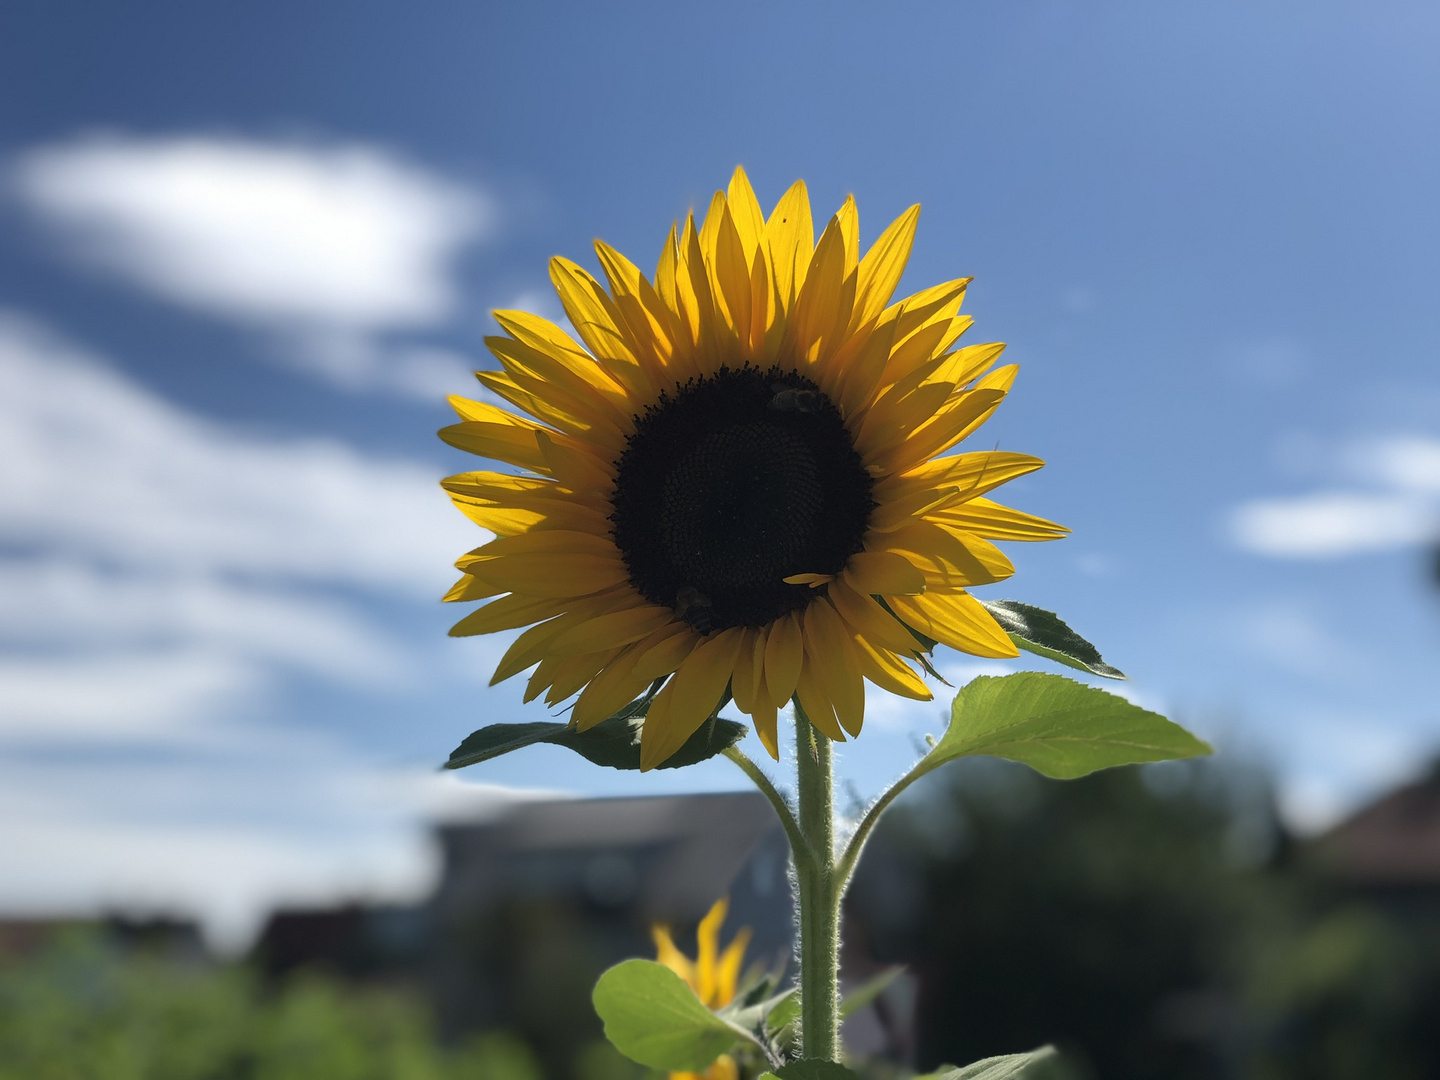 Sunflower Porträtiert 